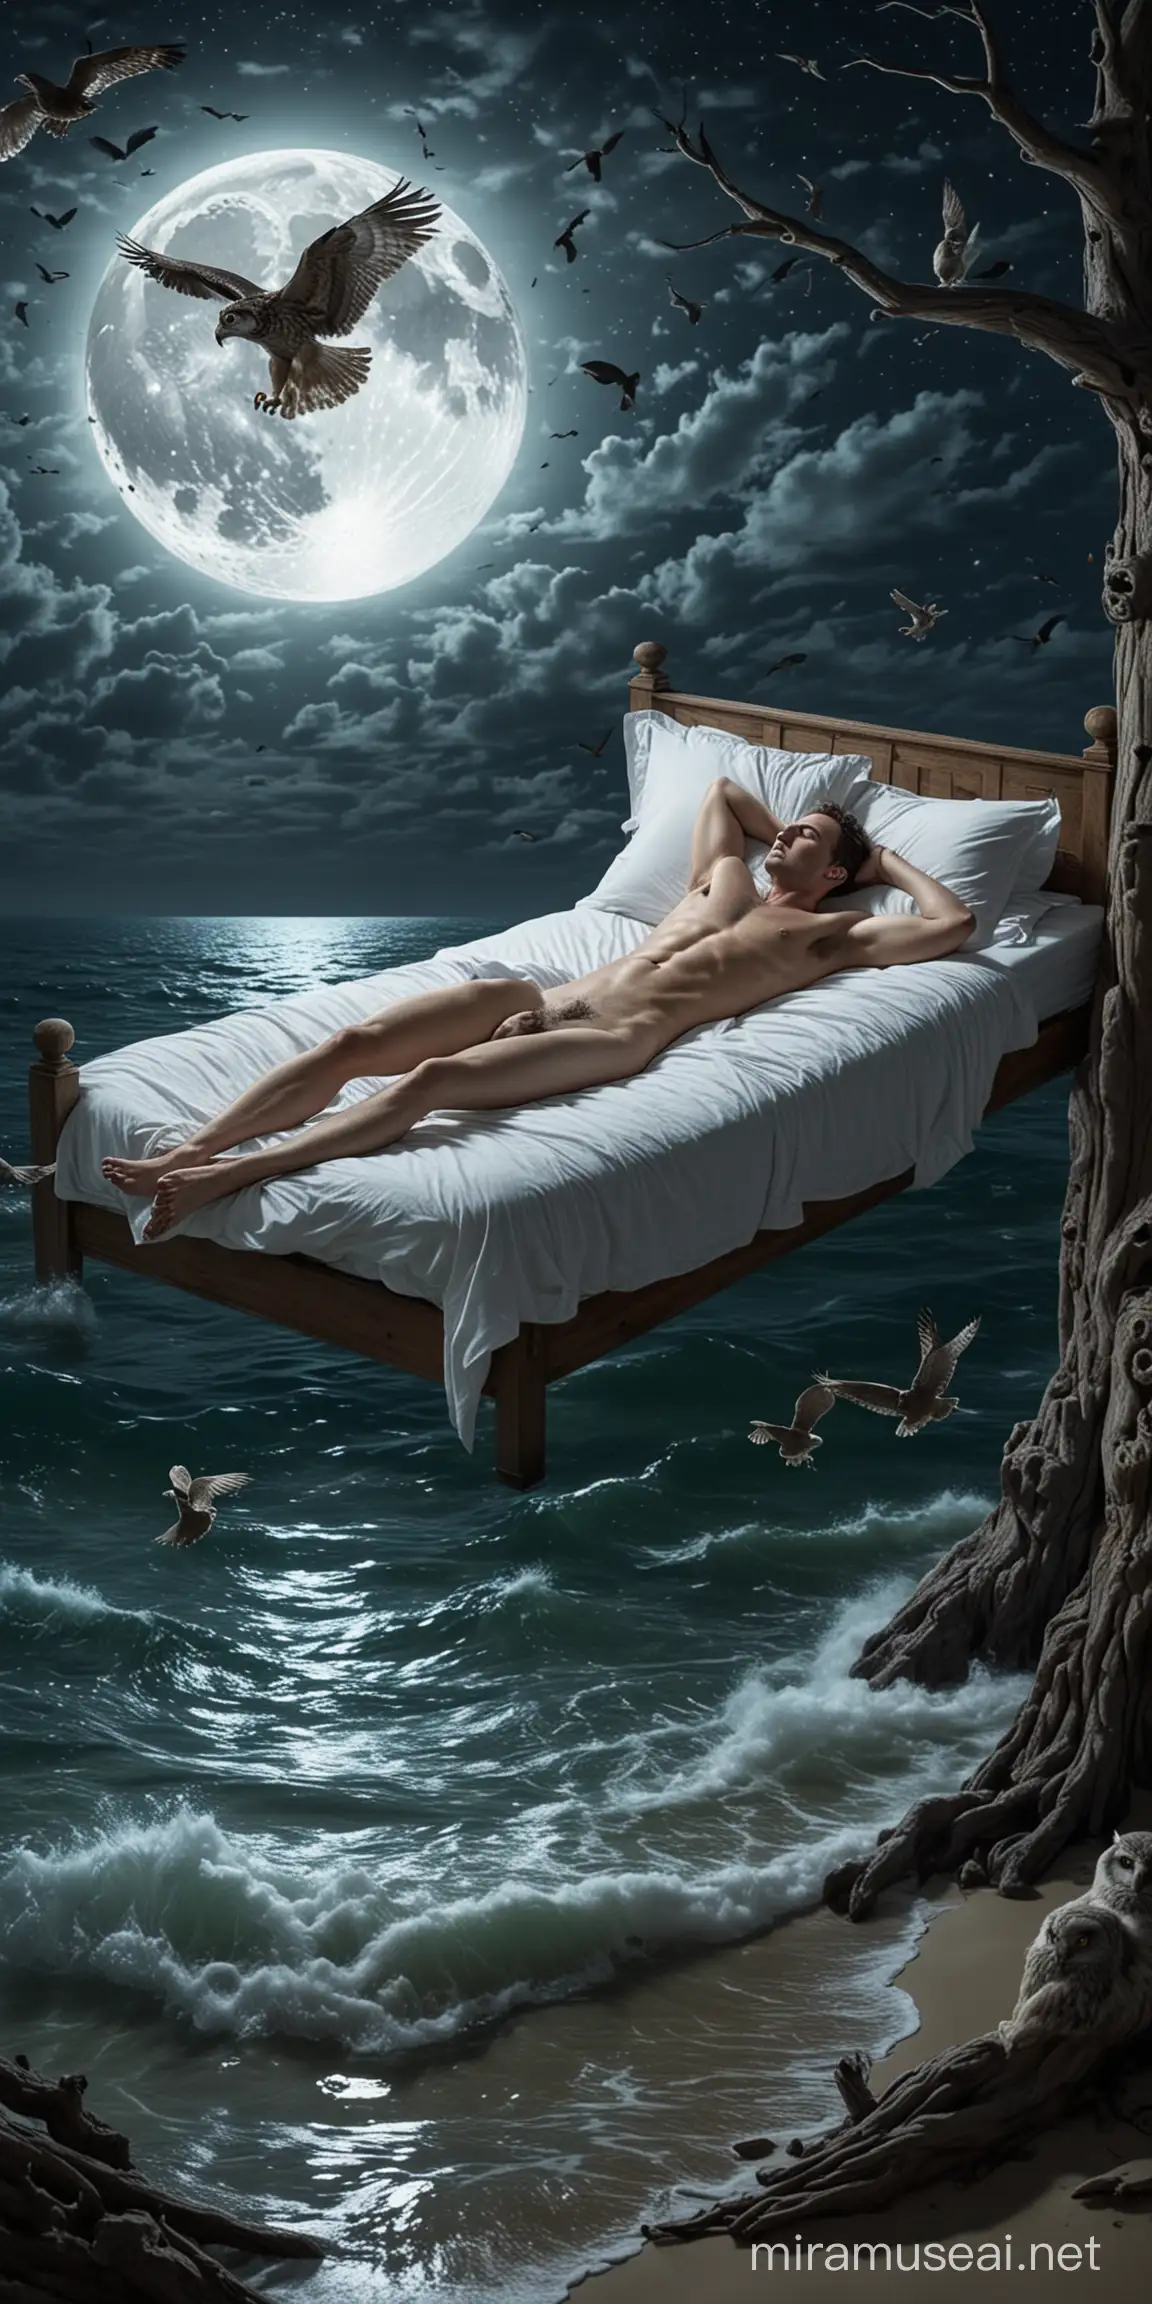 Rapaz deitado pelado em uma cama dormindo, flutuando no mar, sob um luar, observado por uma coruja voando